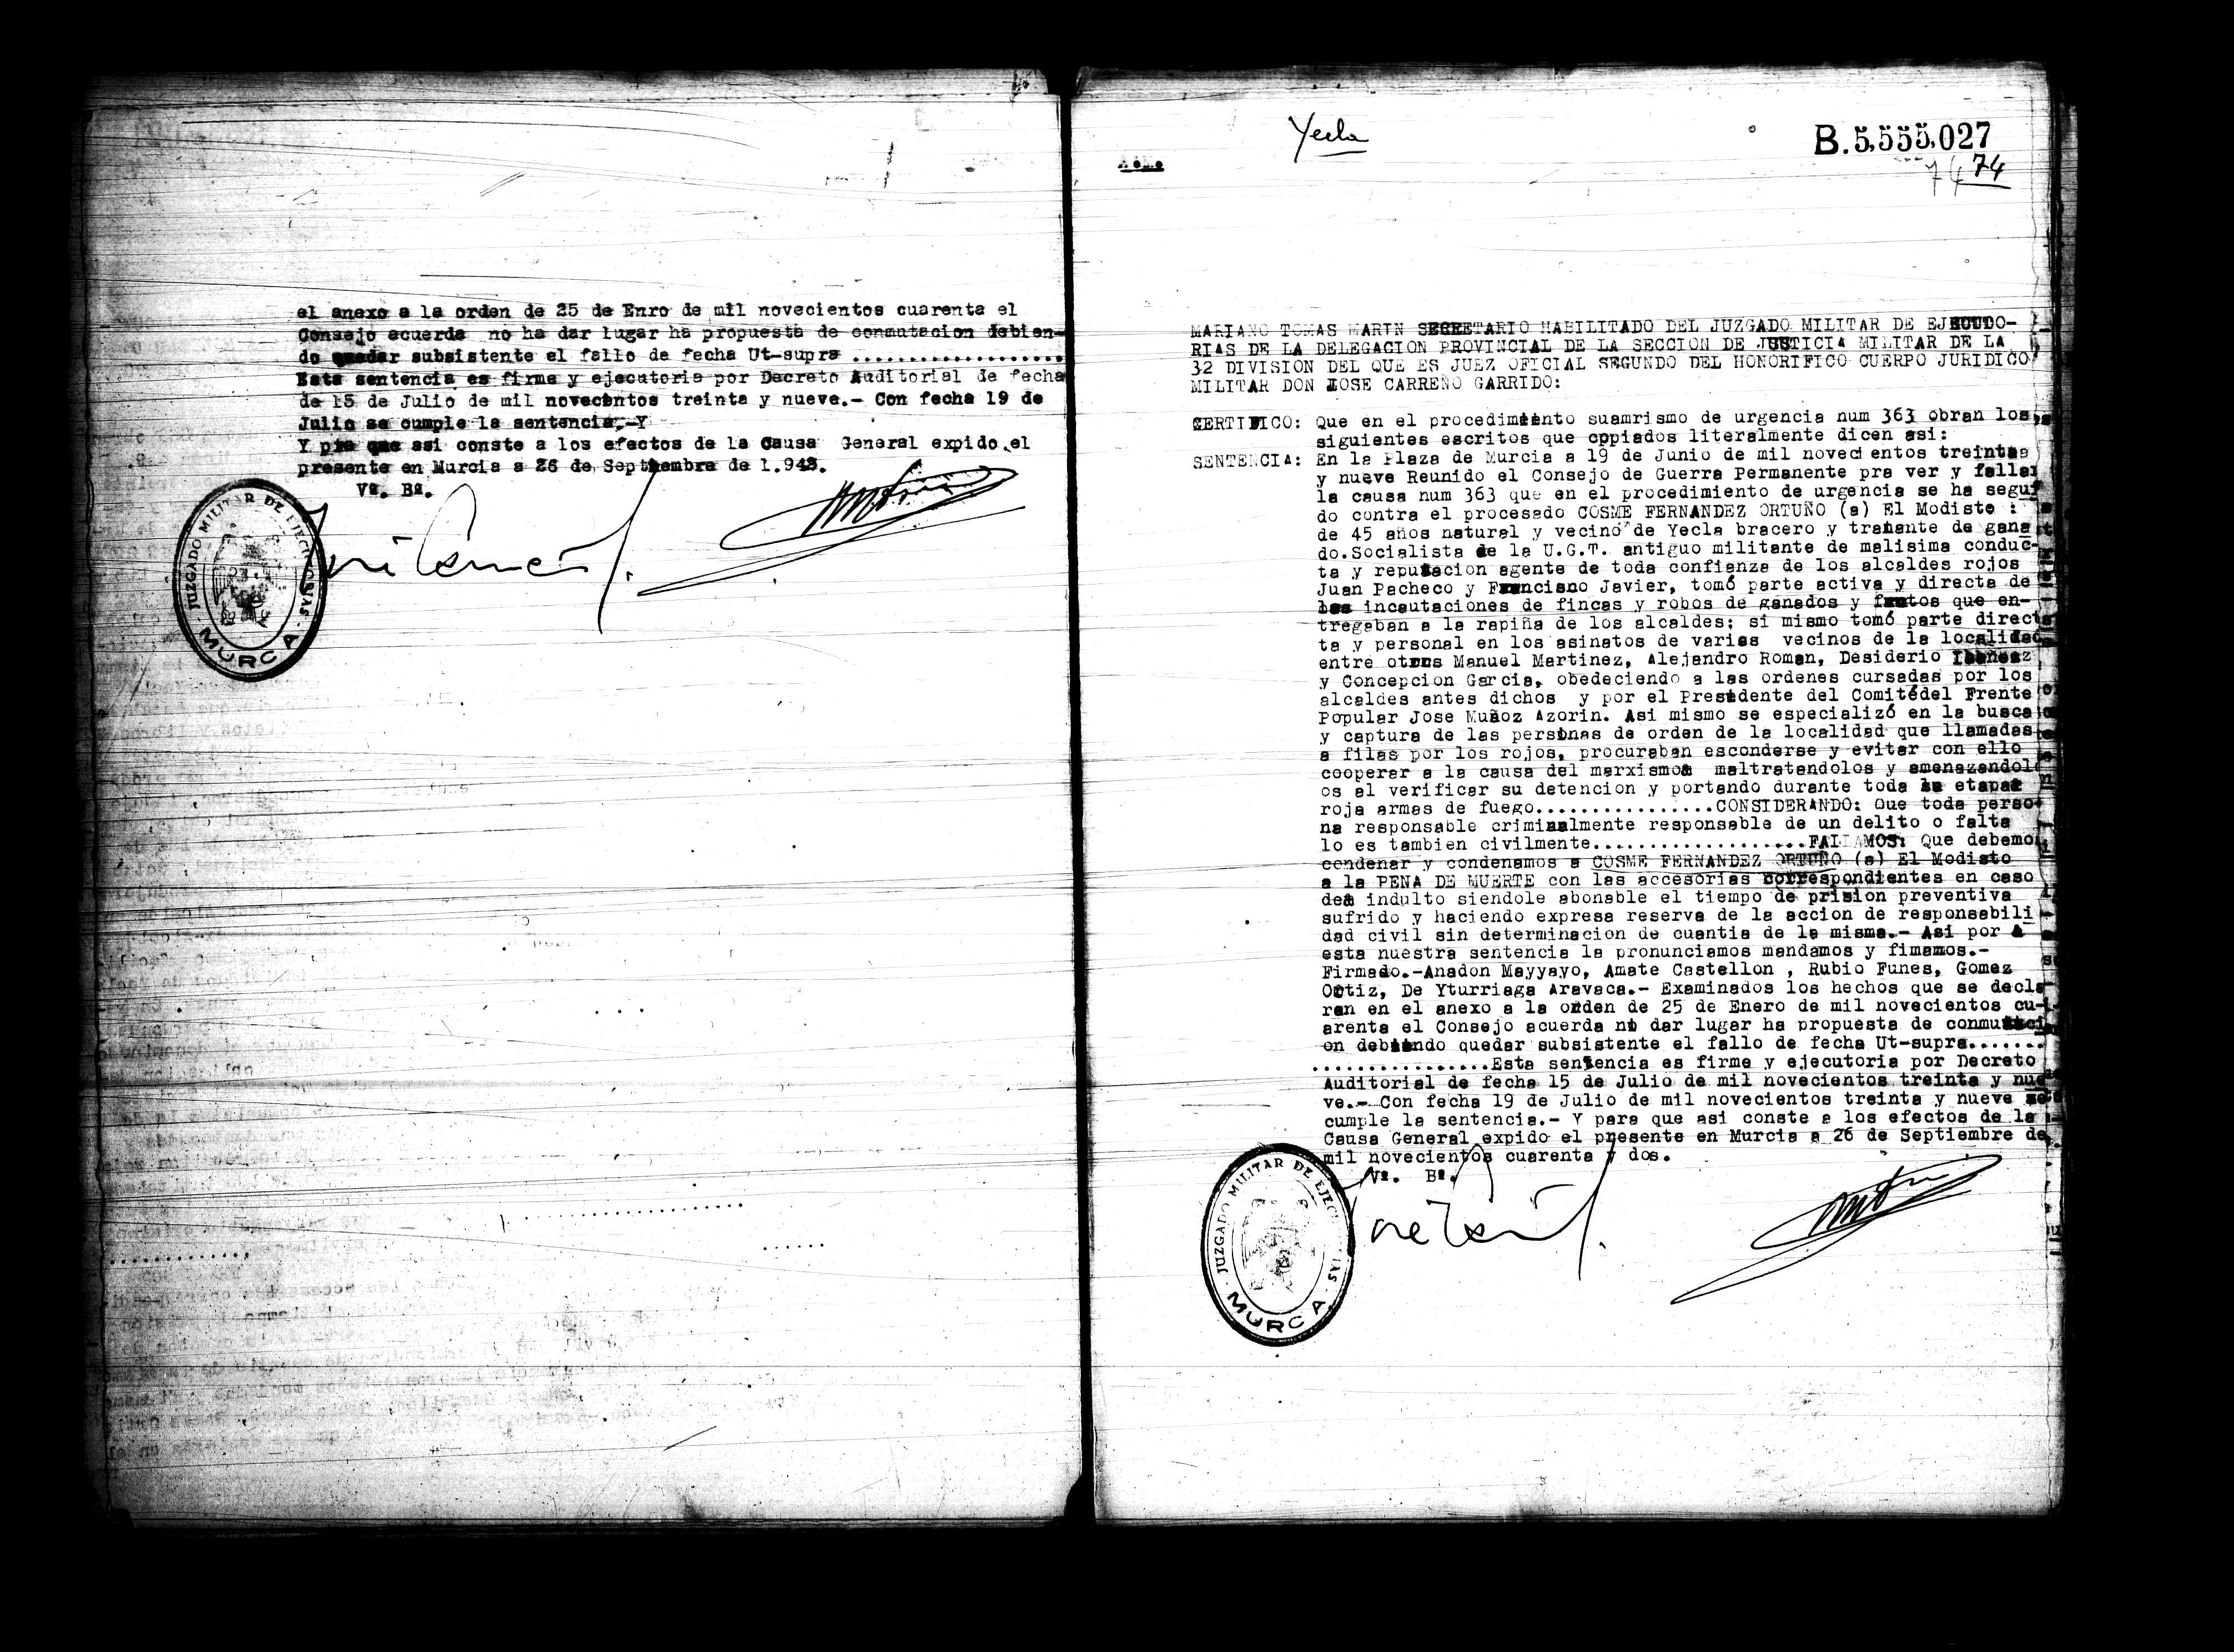 Certificado de la sentencia pronunciada contra Cosme Fernández Ortuño, causa 363, el 19 de junio de 1939.